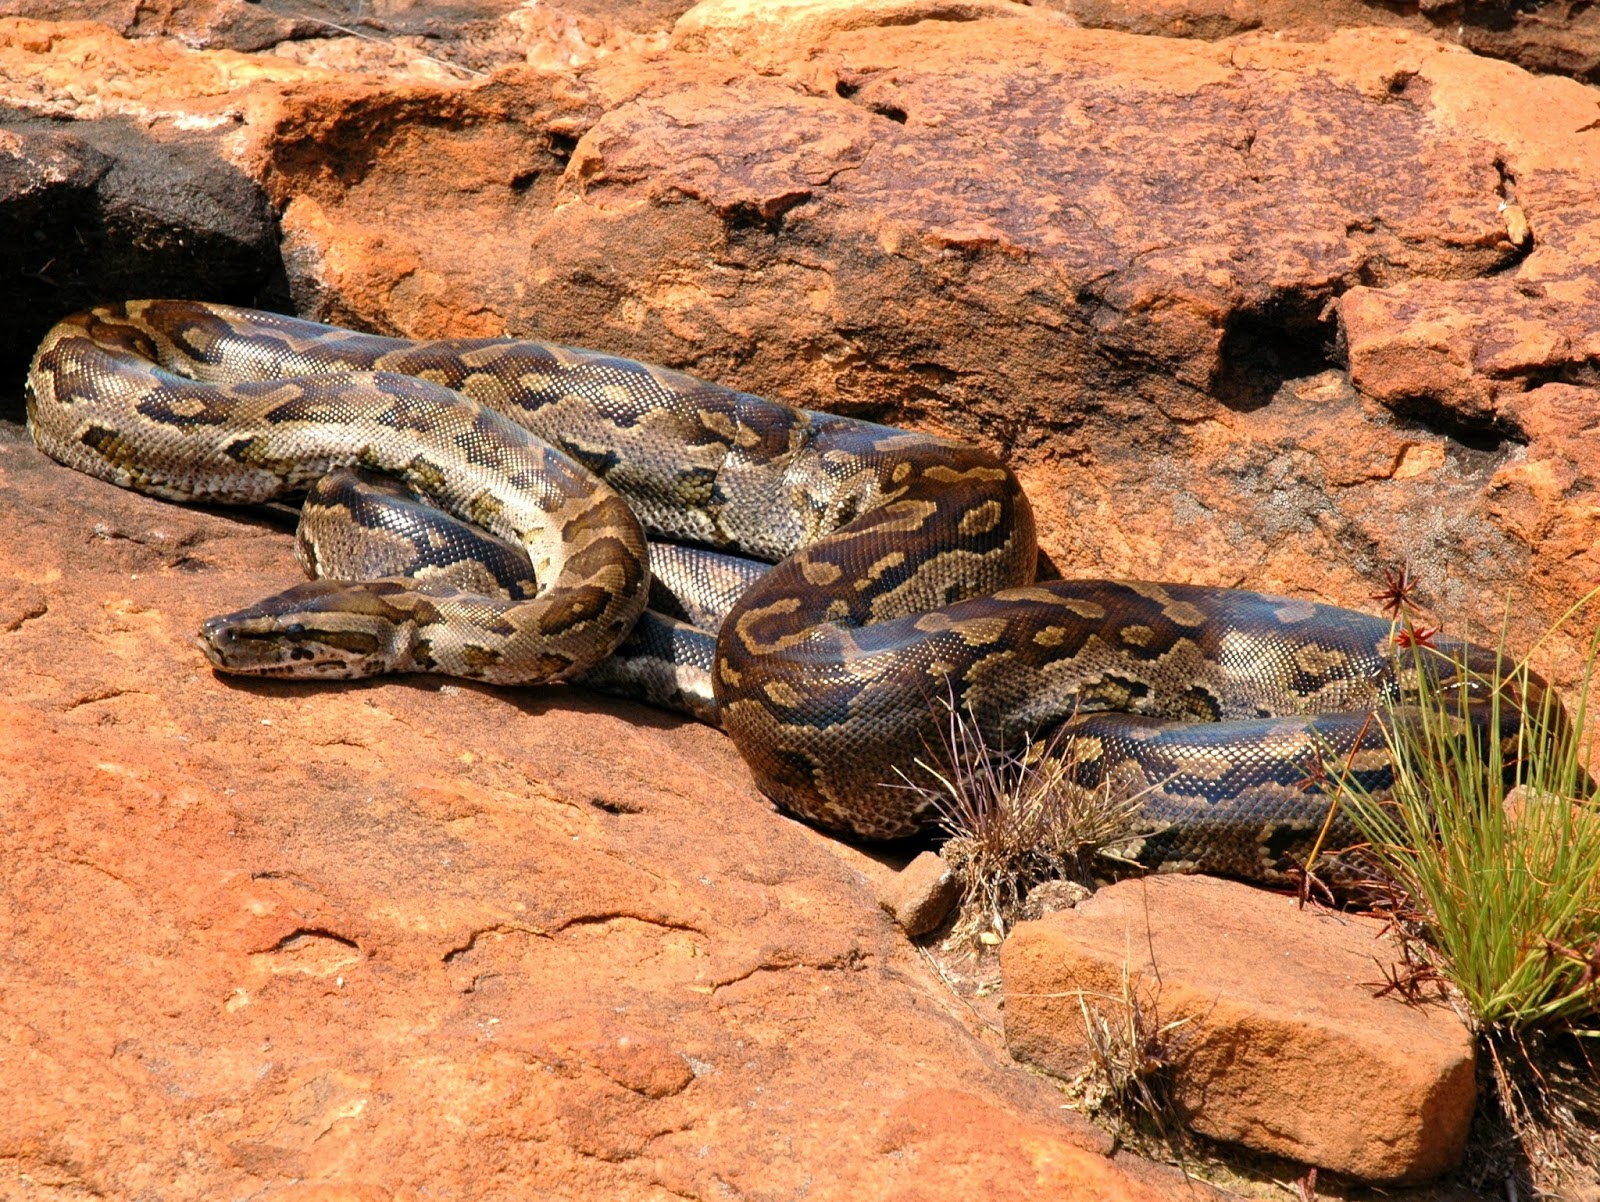 Giant Anacondas And Other Super-Sized Cryptozoological Snakes 32